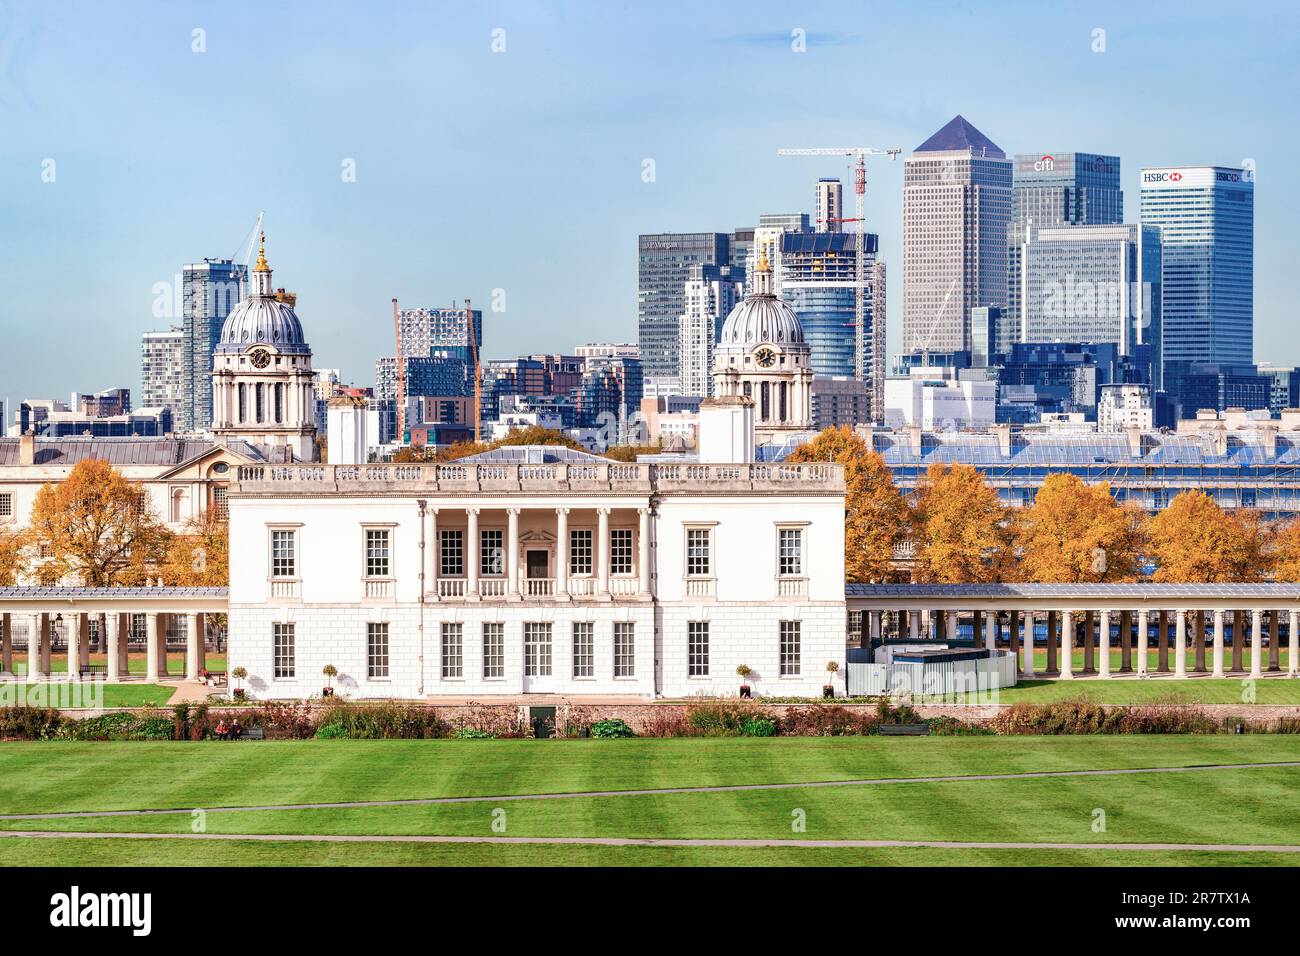 Londra, Regno Unito - 25 ottobre 2015: Vista giorno d'autunno alla Queen's House e al Naval College e con lo skyline di Canary Wharf con i suoi uffici aziendali Foto Stock